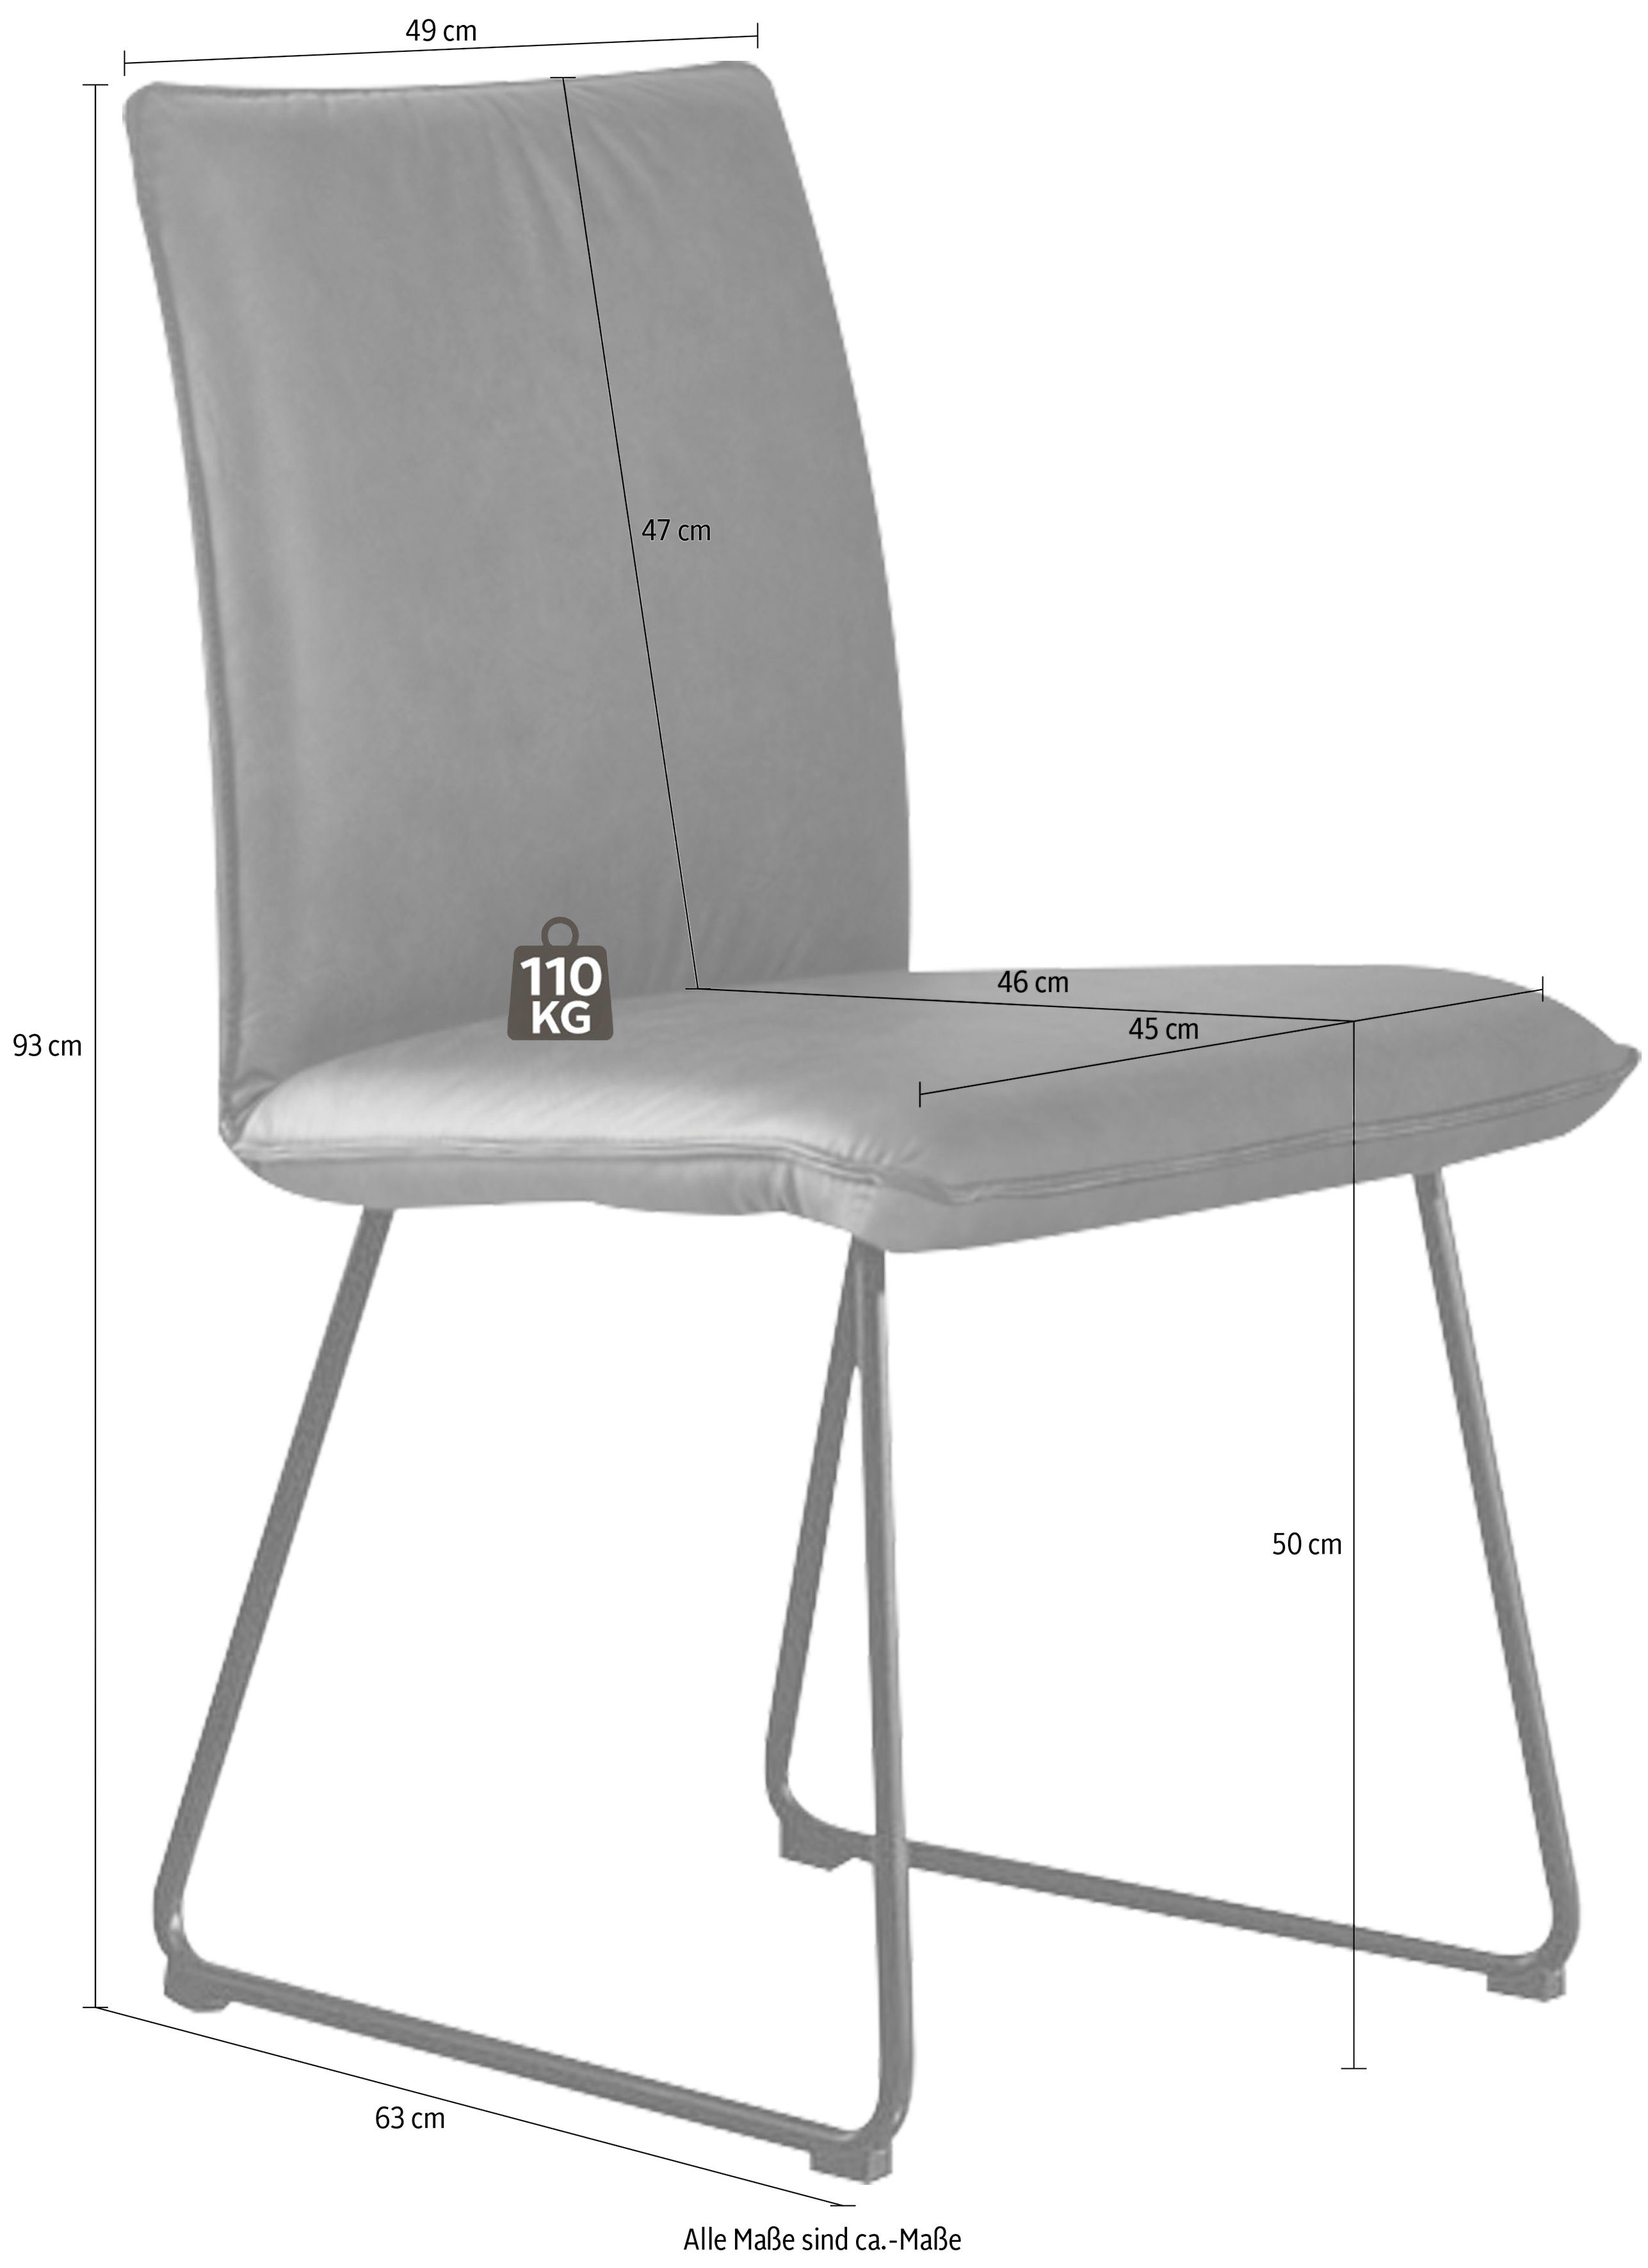 K+W Komfort mit Stuhl Metall schwarz Struktur Rundrohrkufe in Kufenstuhl & Wohnen II, Deseo